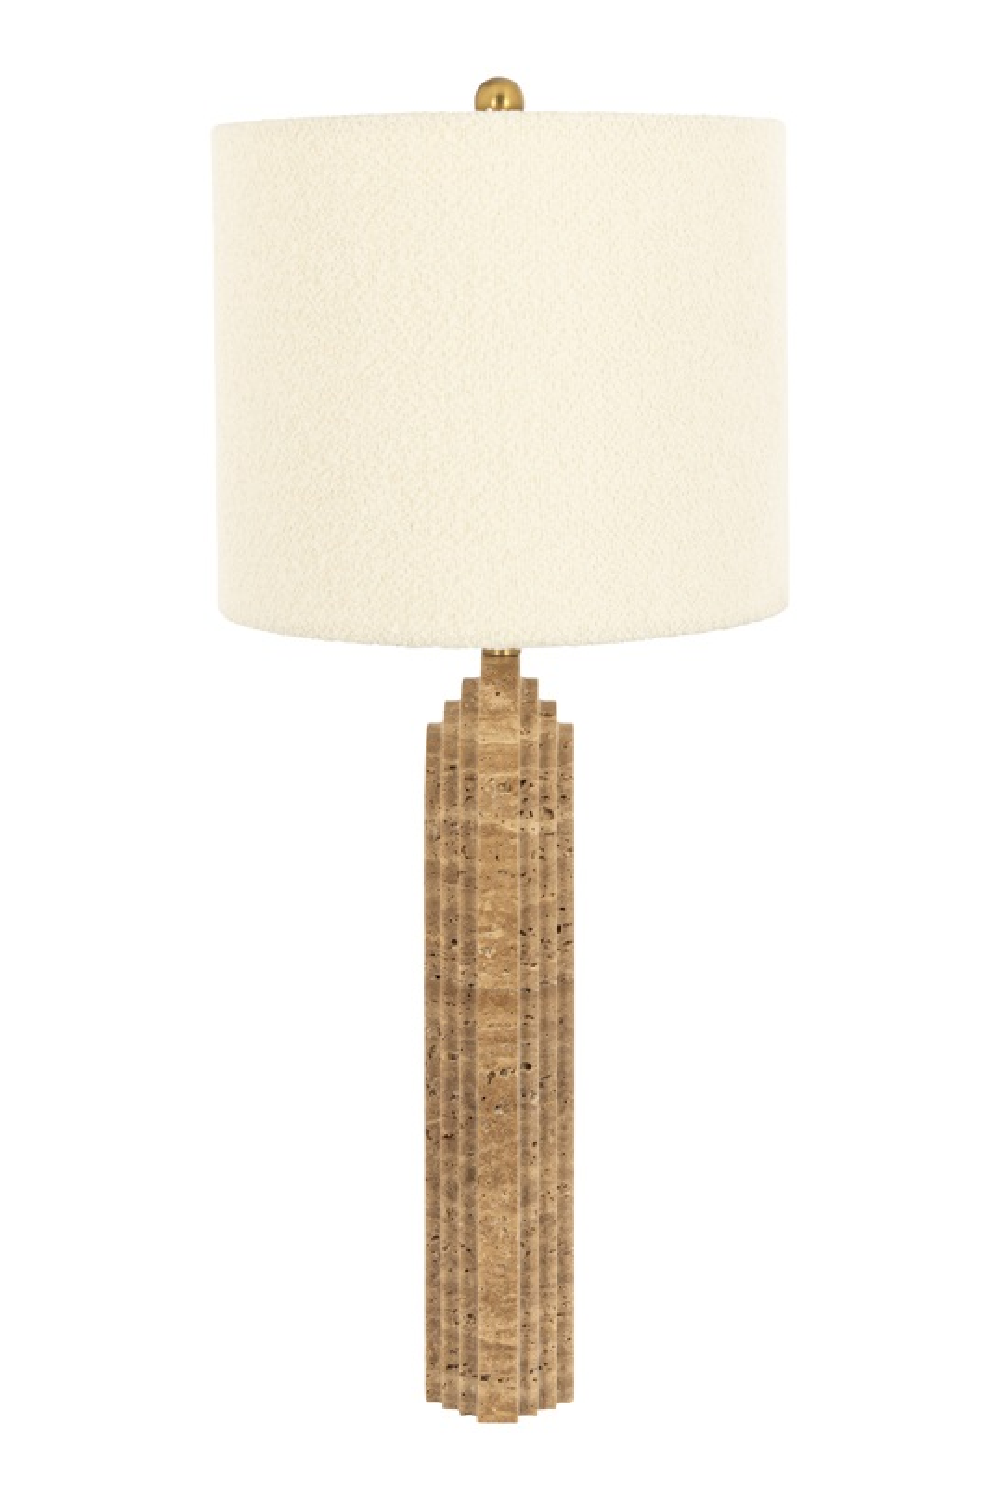 Arched Marble Table Lamp | OROA Nila | Oroa.com